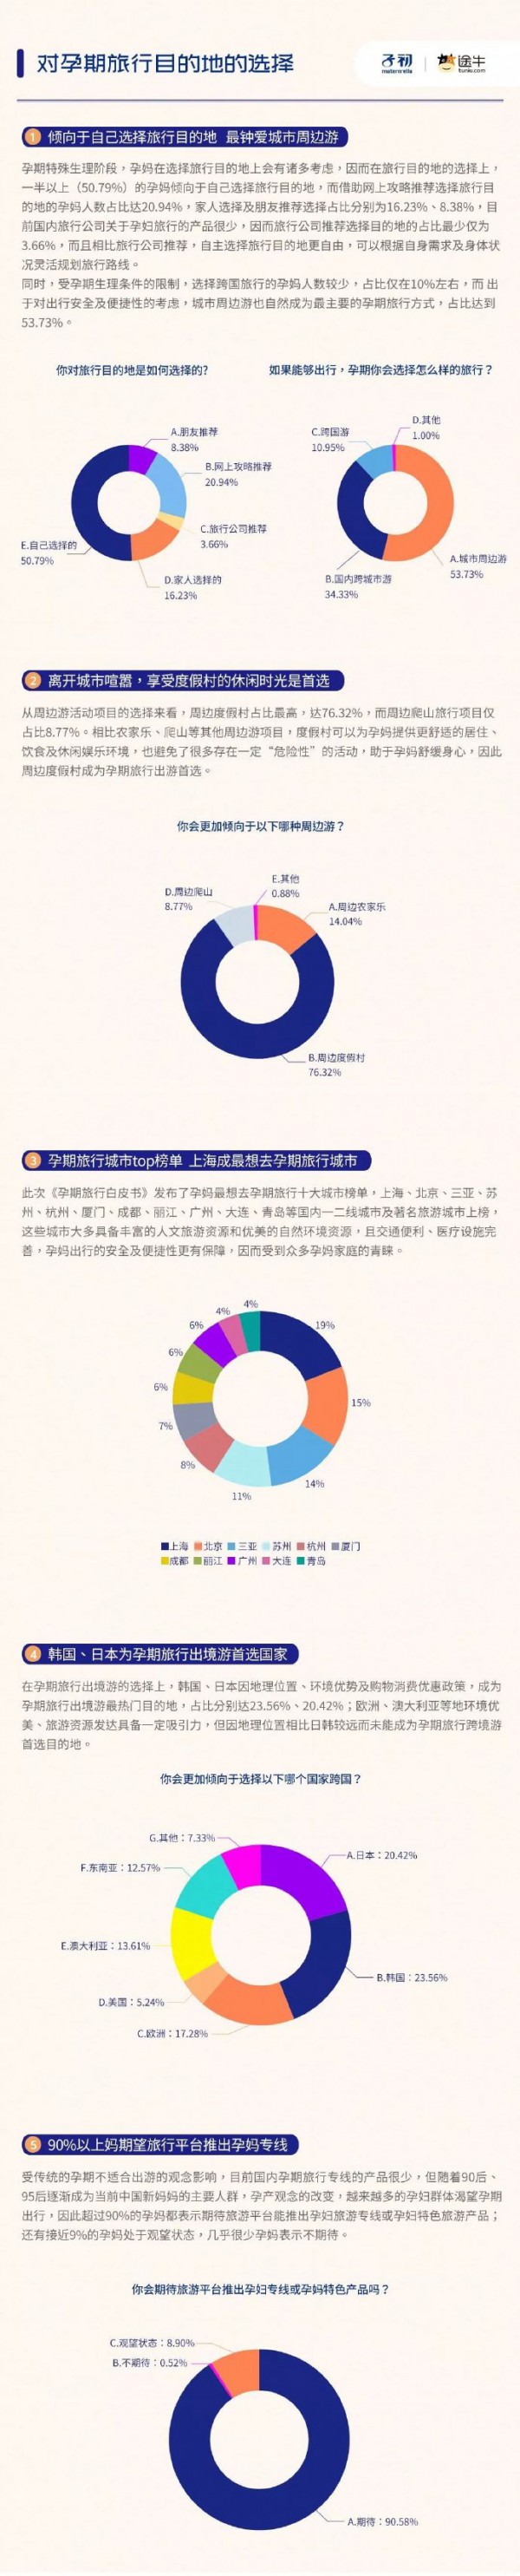 子初品牌联合途牛旅游发布《2018年中国孕期旅行白皮书》